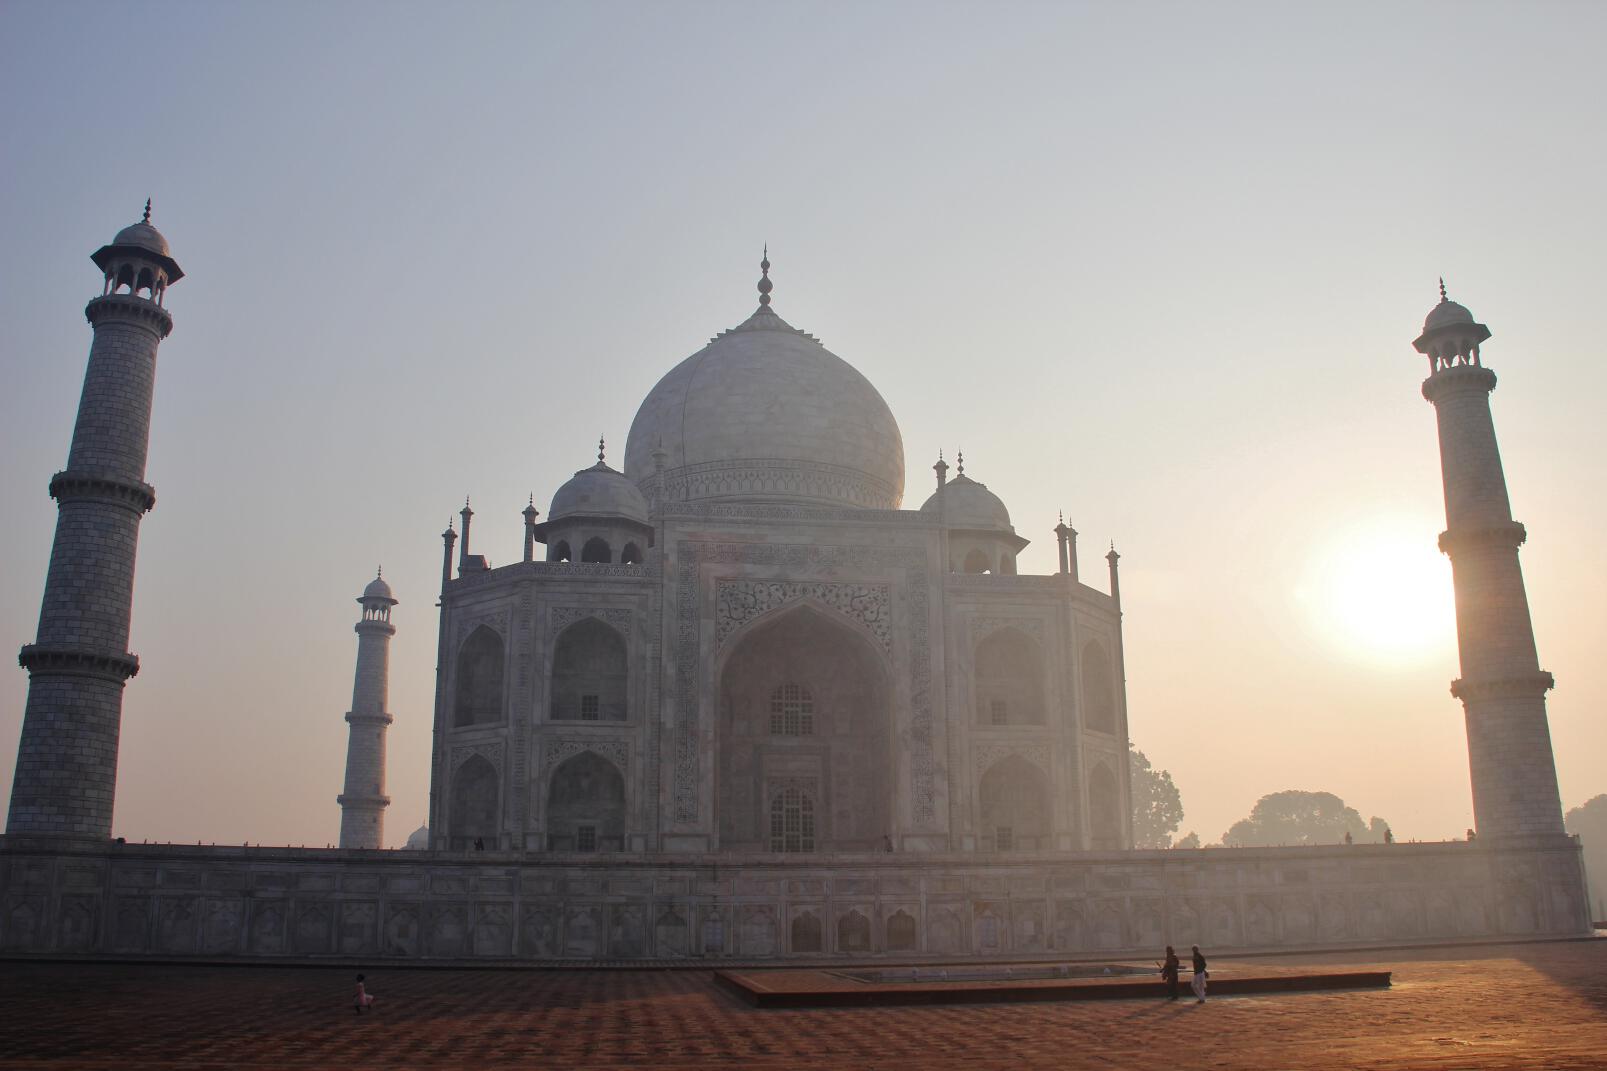 The sun rises behind the Taj Mahal.